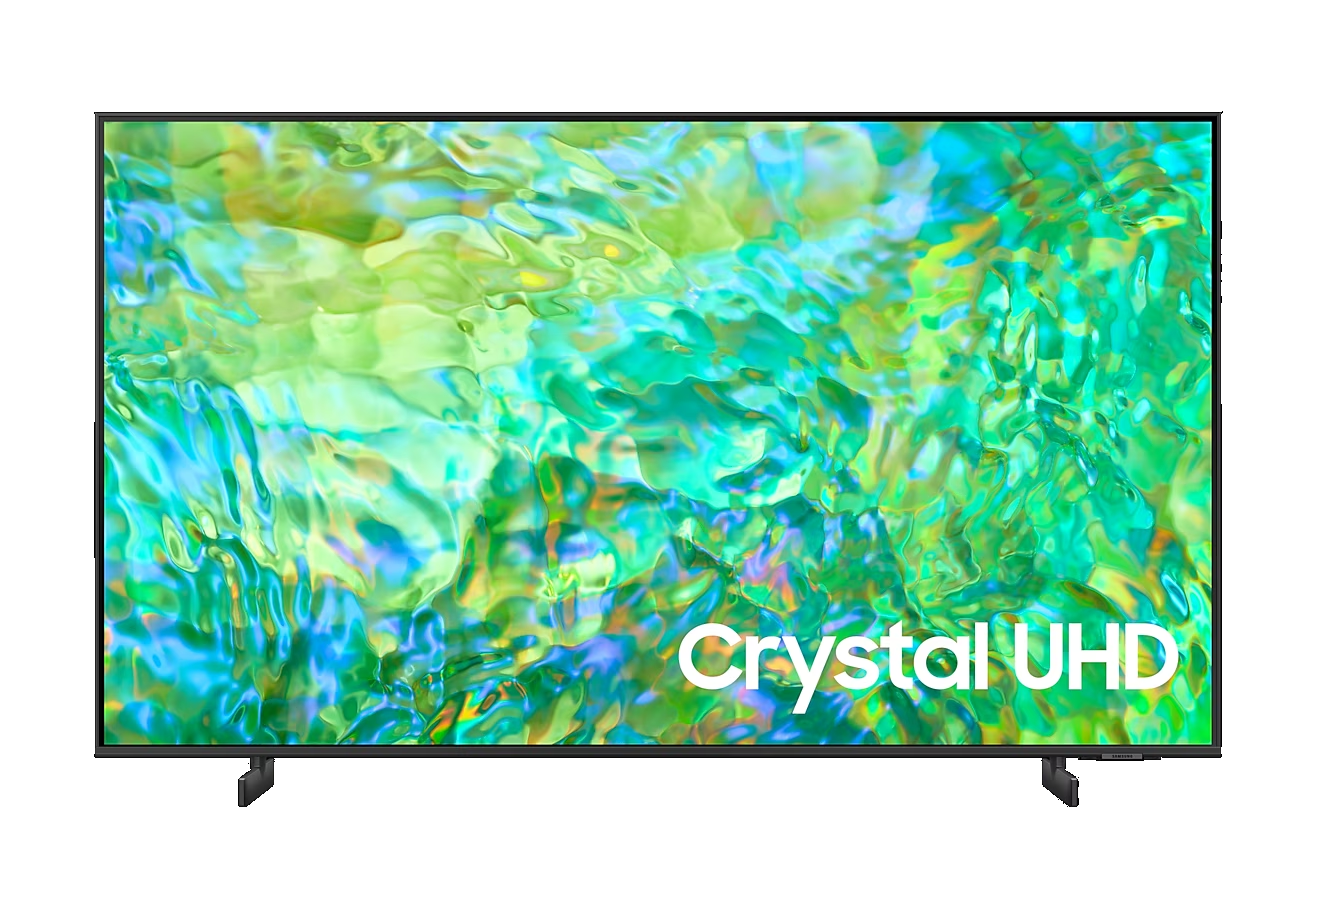 Samsung 4K UHD Crystal LED TV 85″Inch 85CU8000